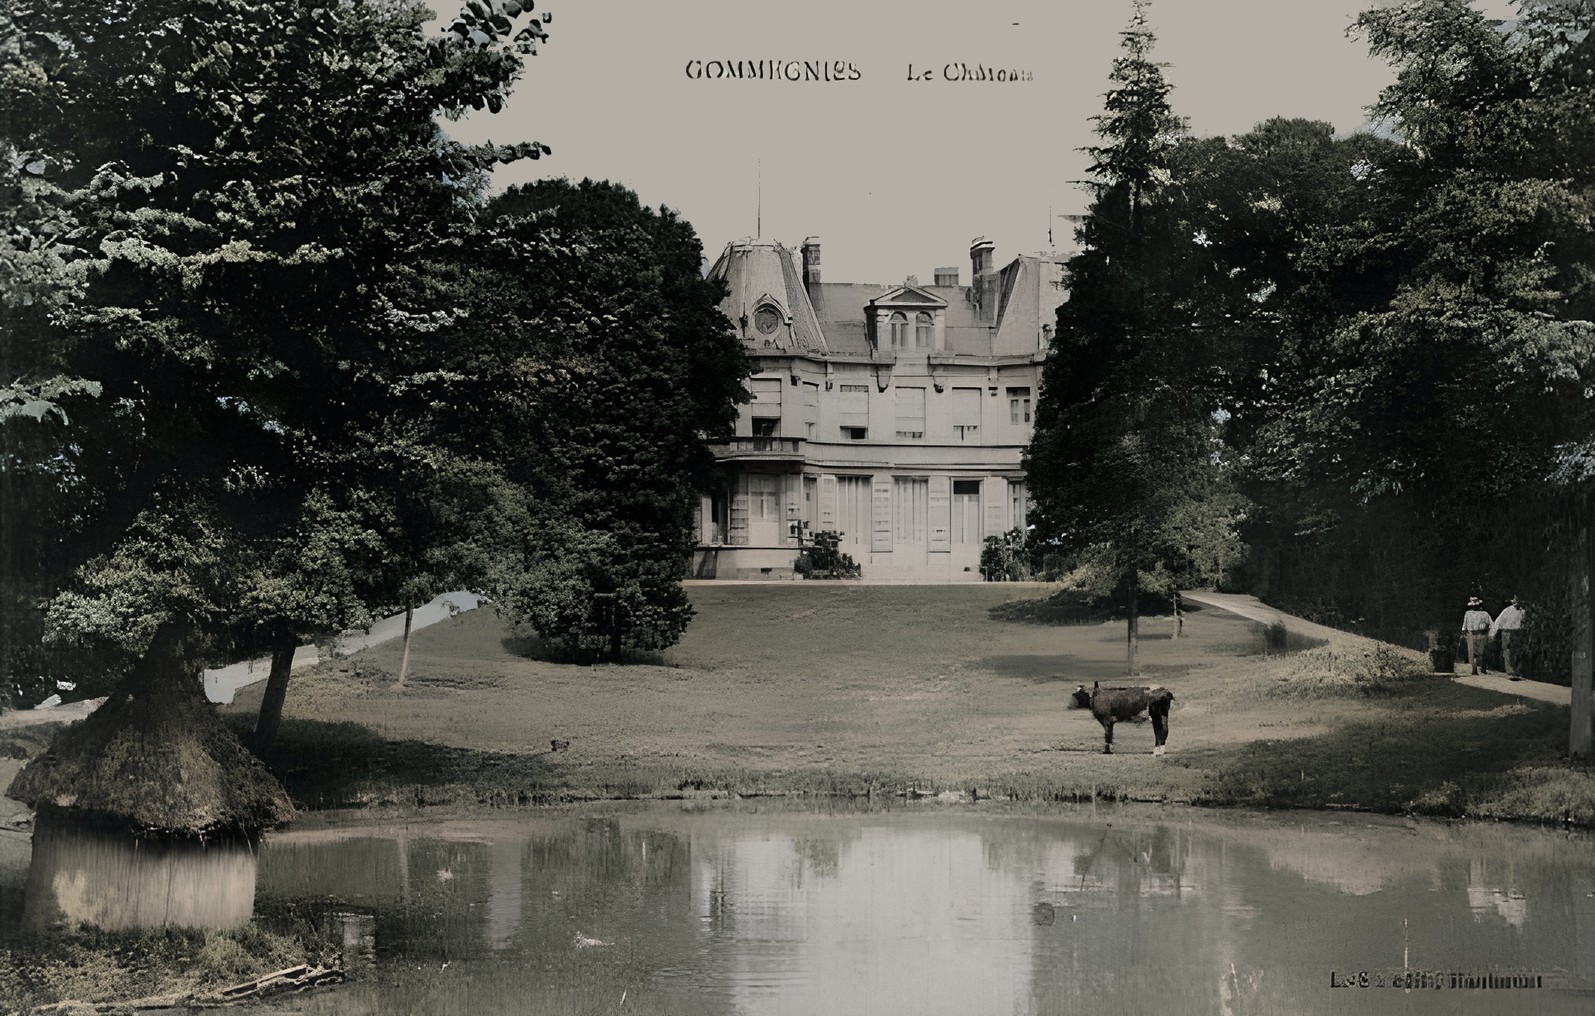 Le château de Gommegnies, 